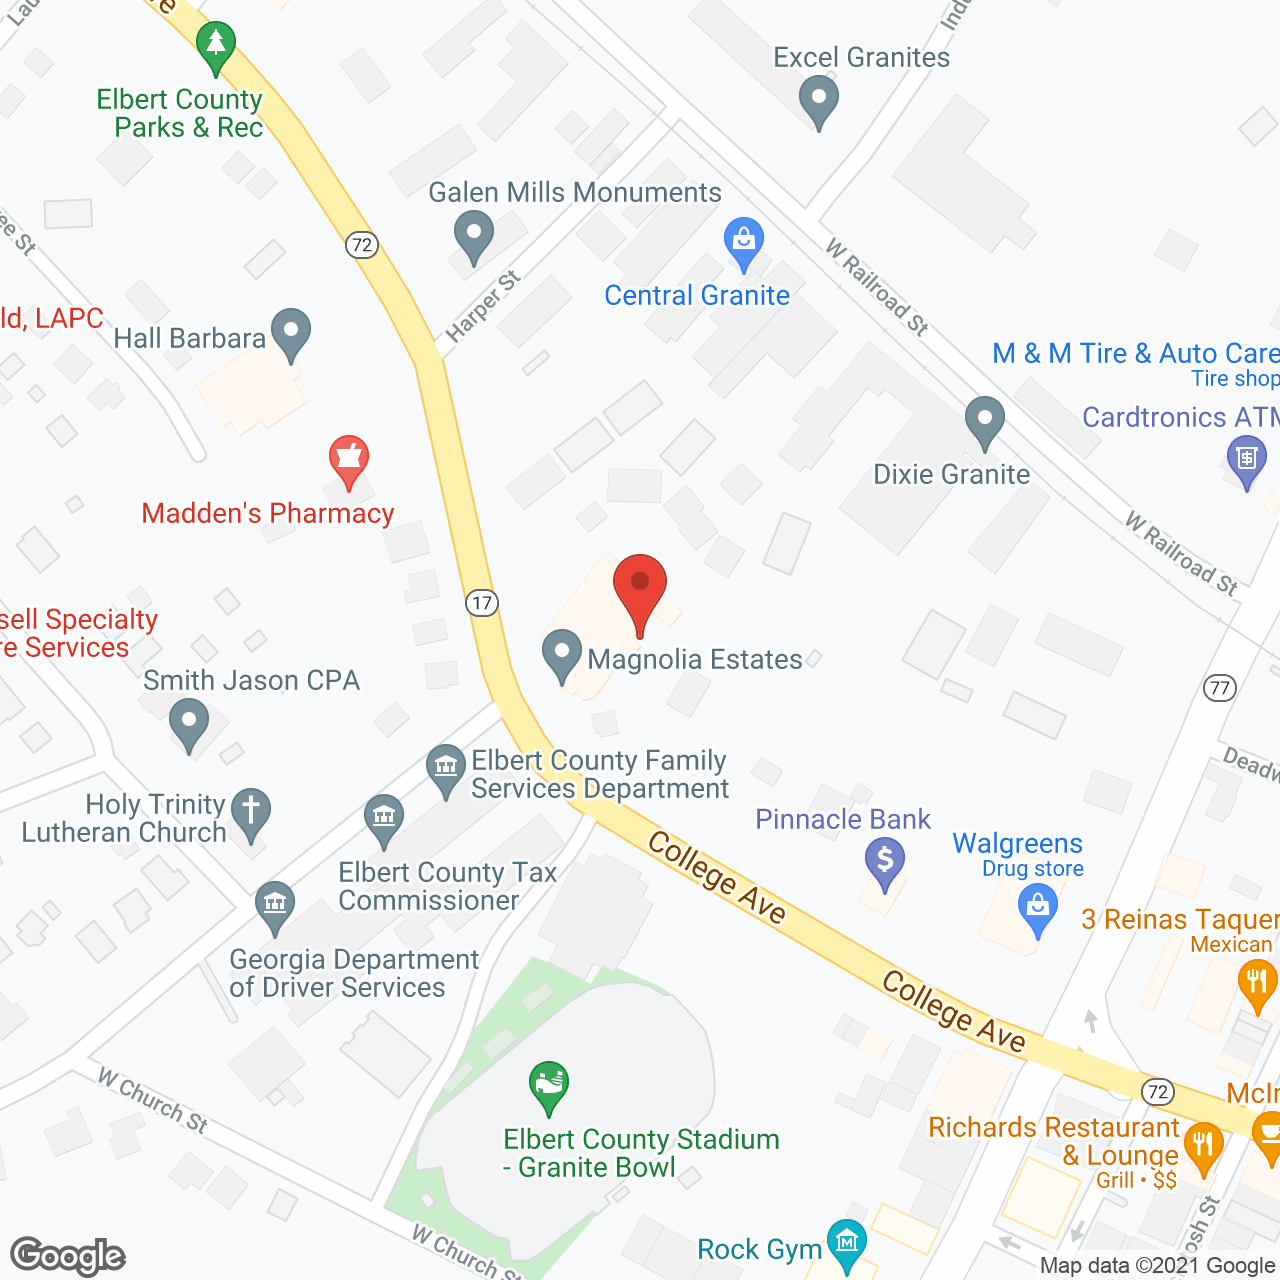 Magnolia Estates in google map